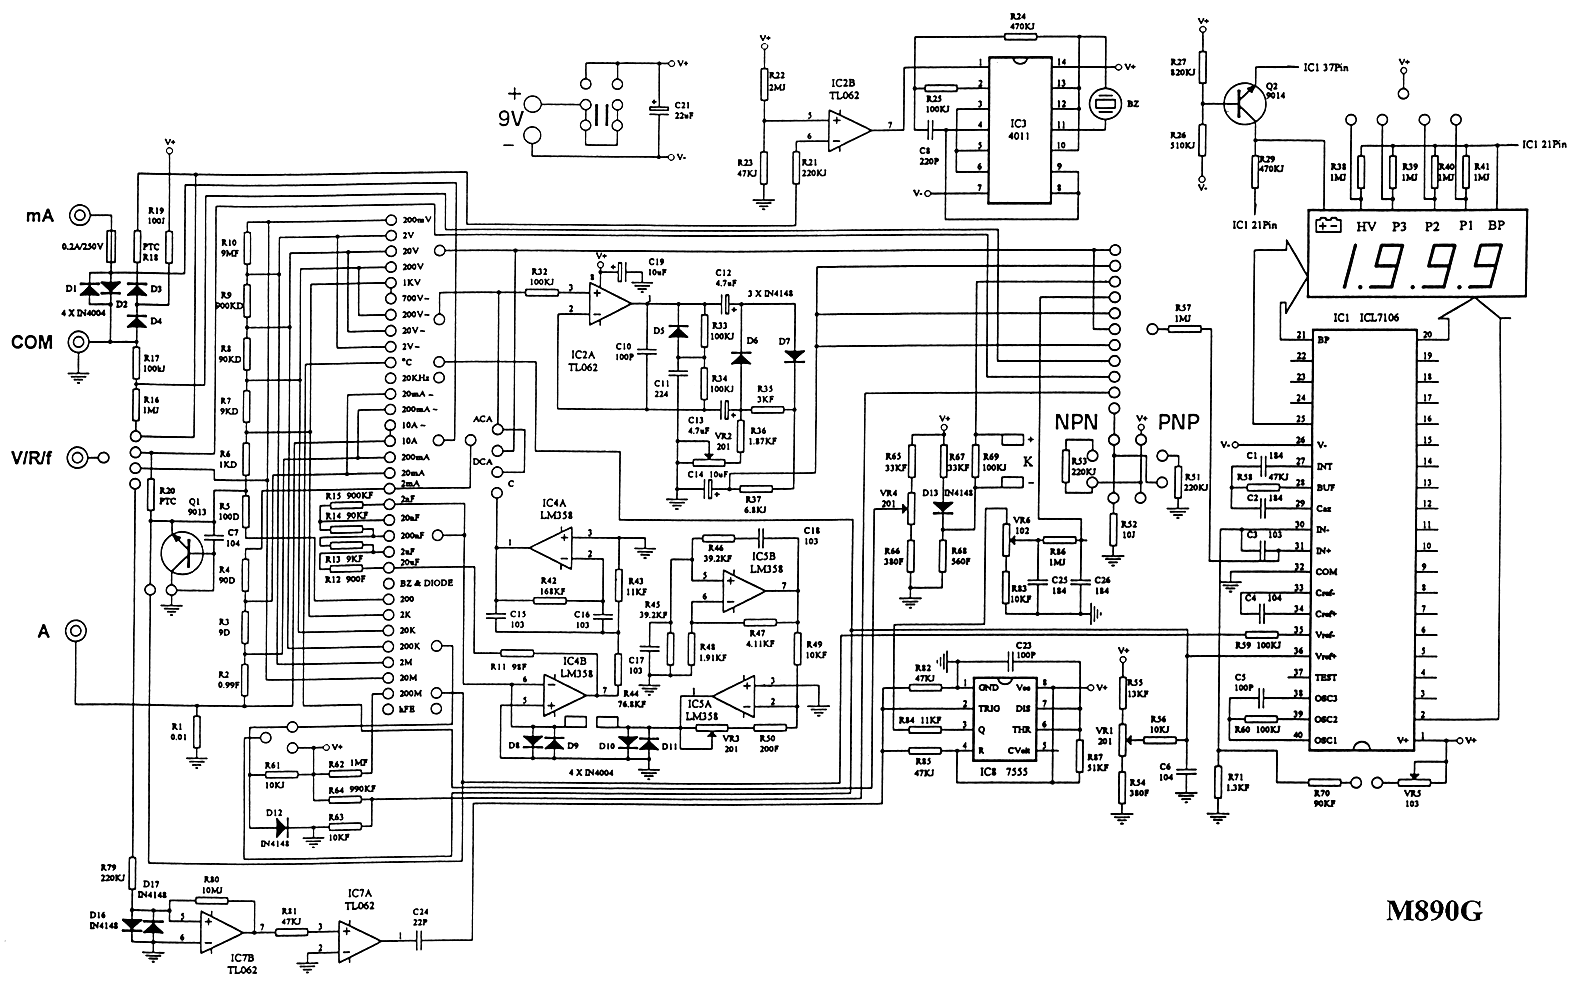 m890g-schematic-diagram.gif